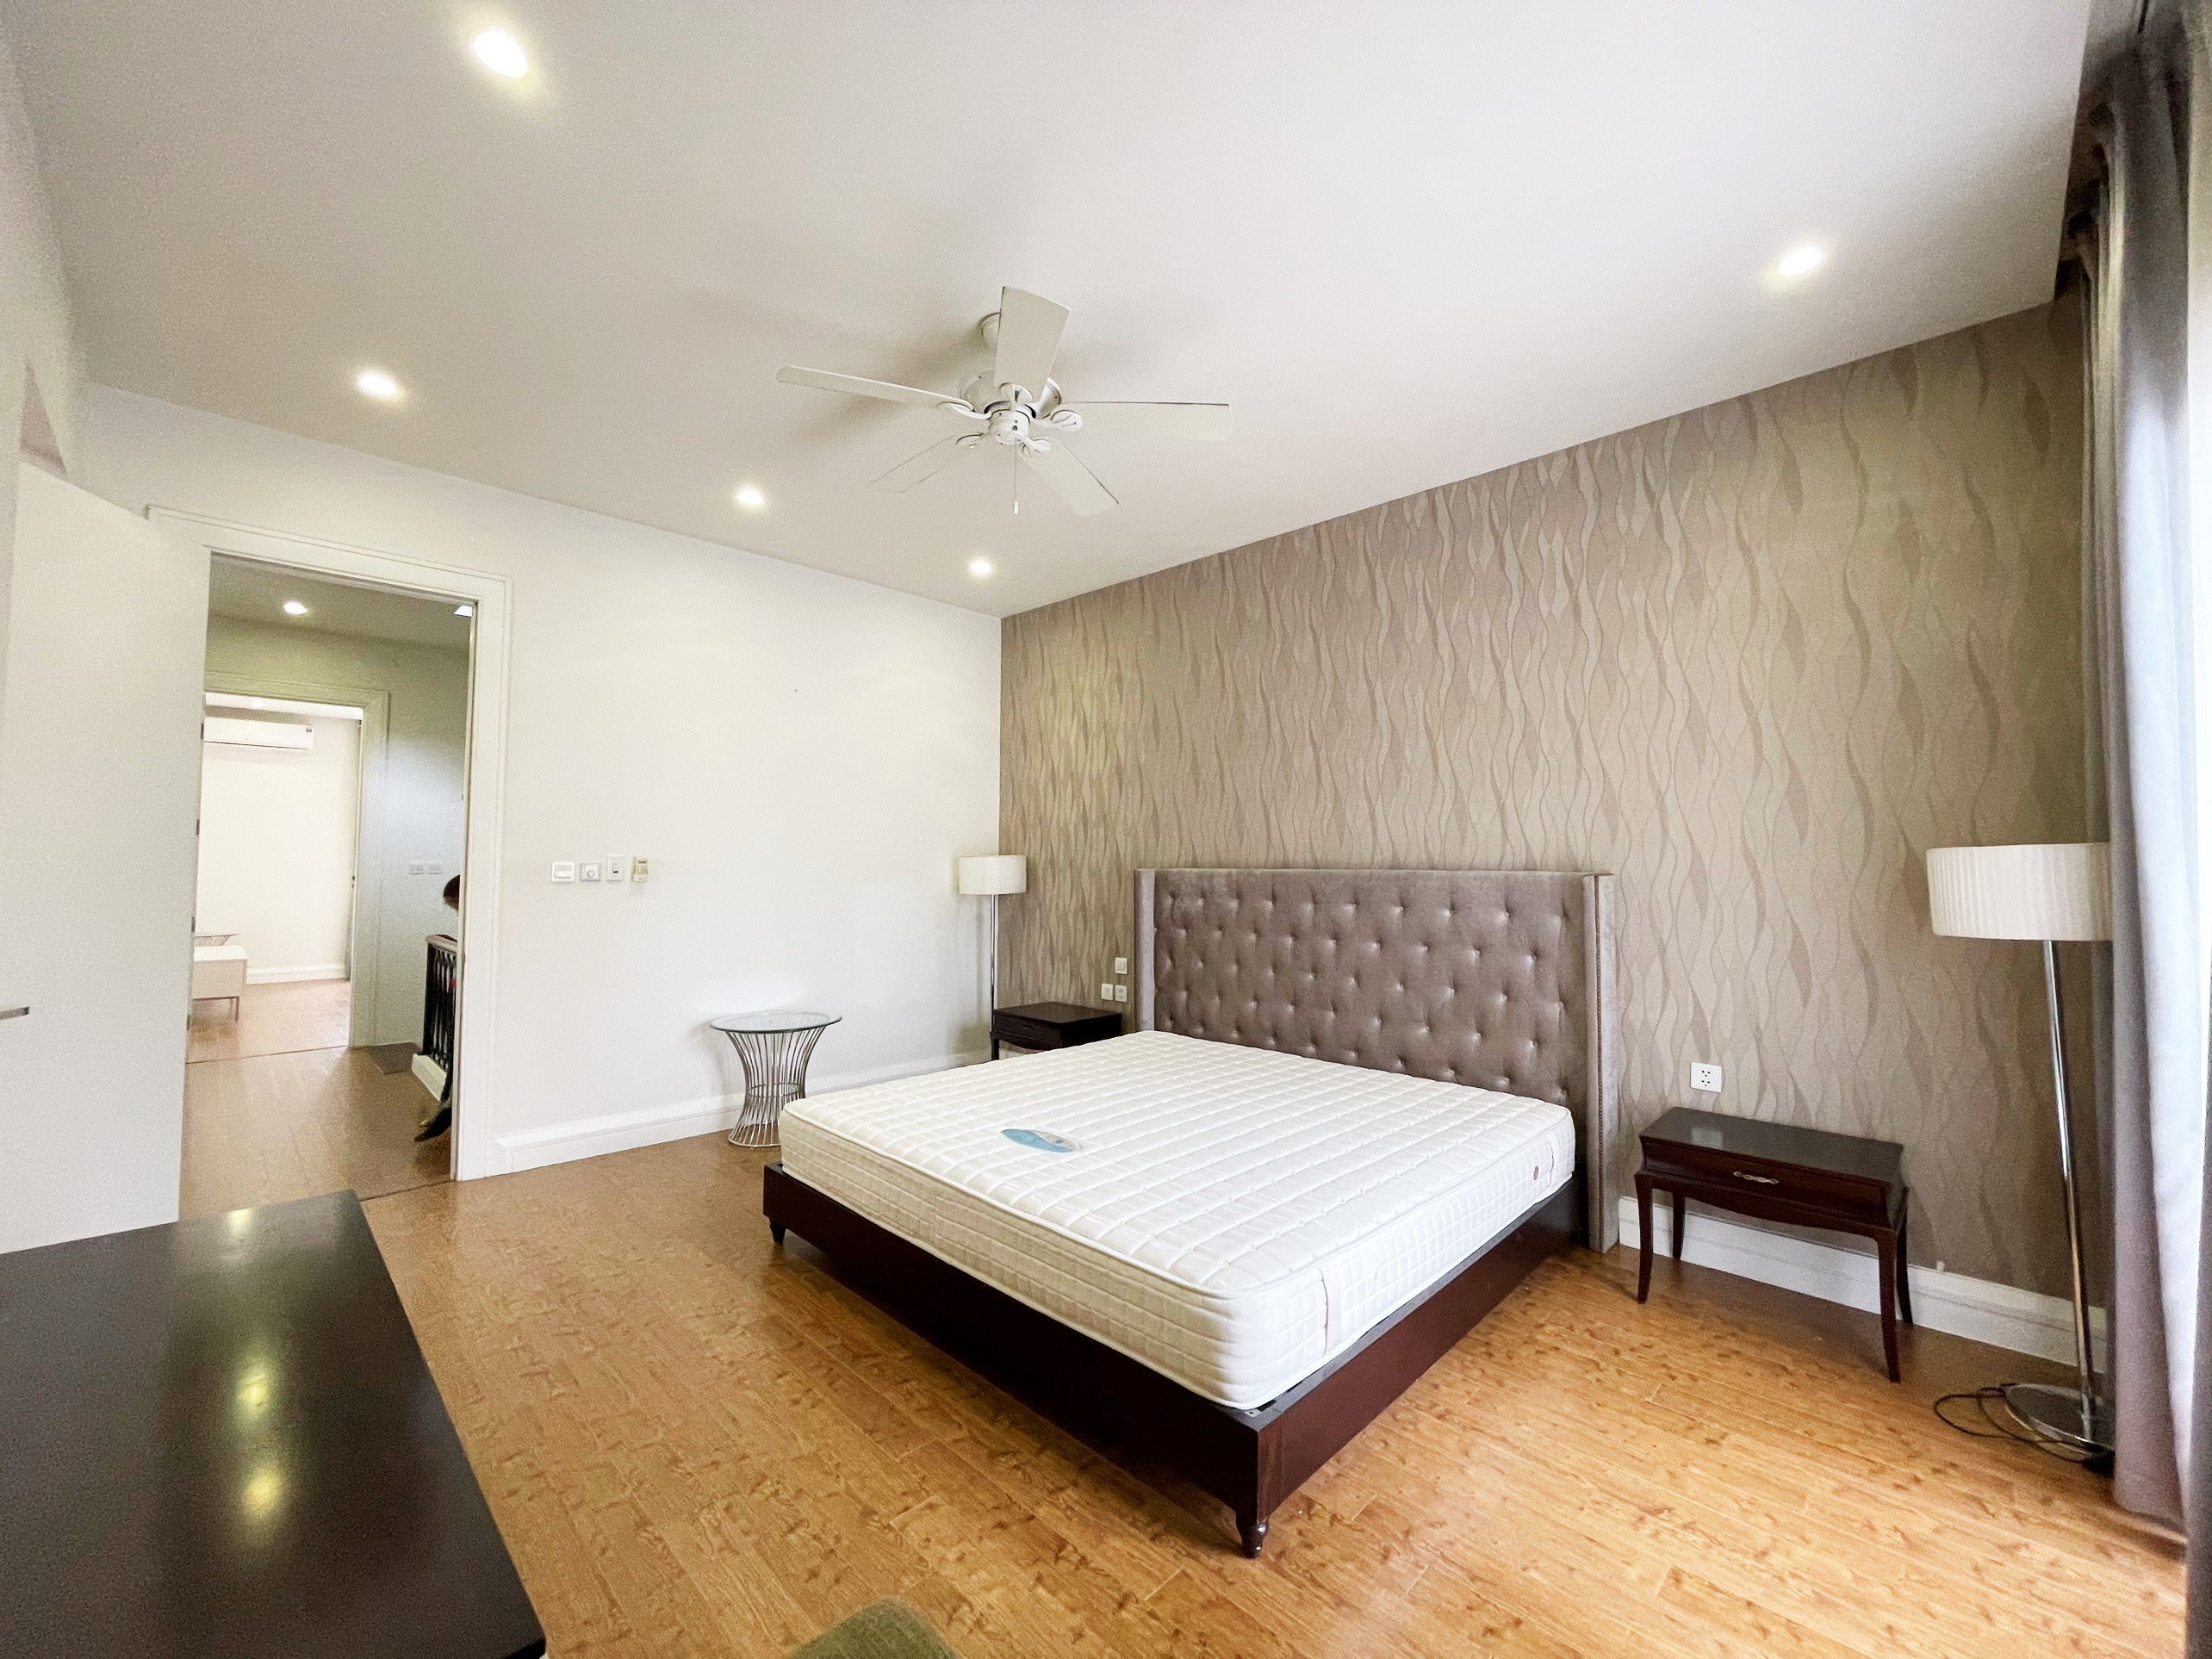 4 bedroom villa for rent in Hoa Sua block, Vinhomes Riverside, Long Bien district 10